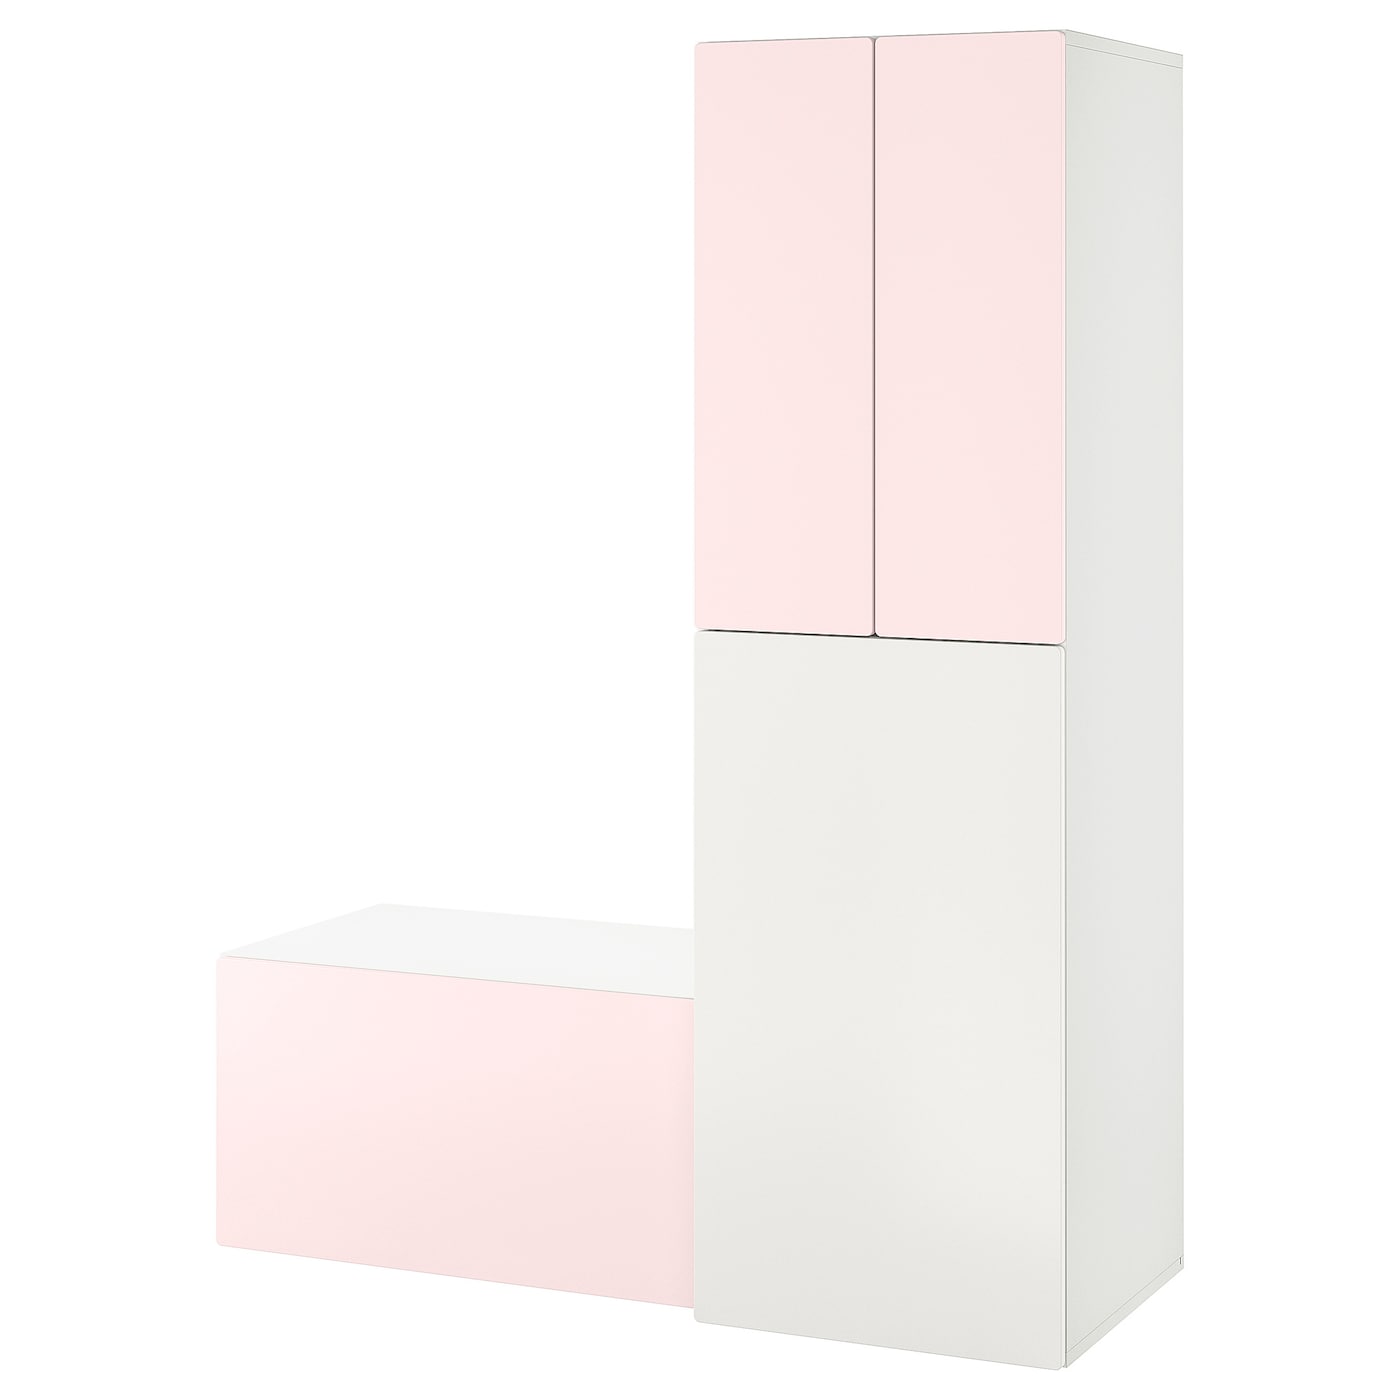 Детская гардеробная комбинация - IKEA SMÅSTAD/SMASTAD, 196x57x150см, белый/розовый, СМОСТАД ИКЕА